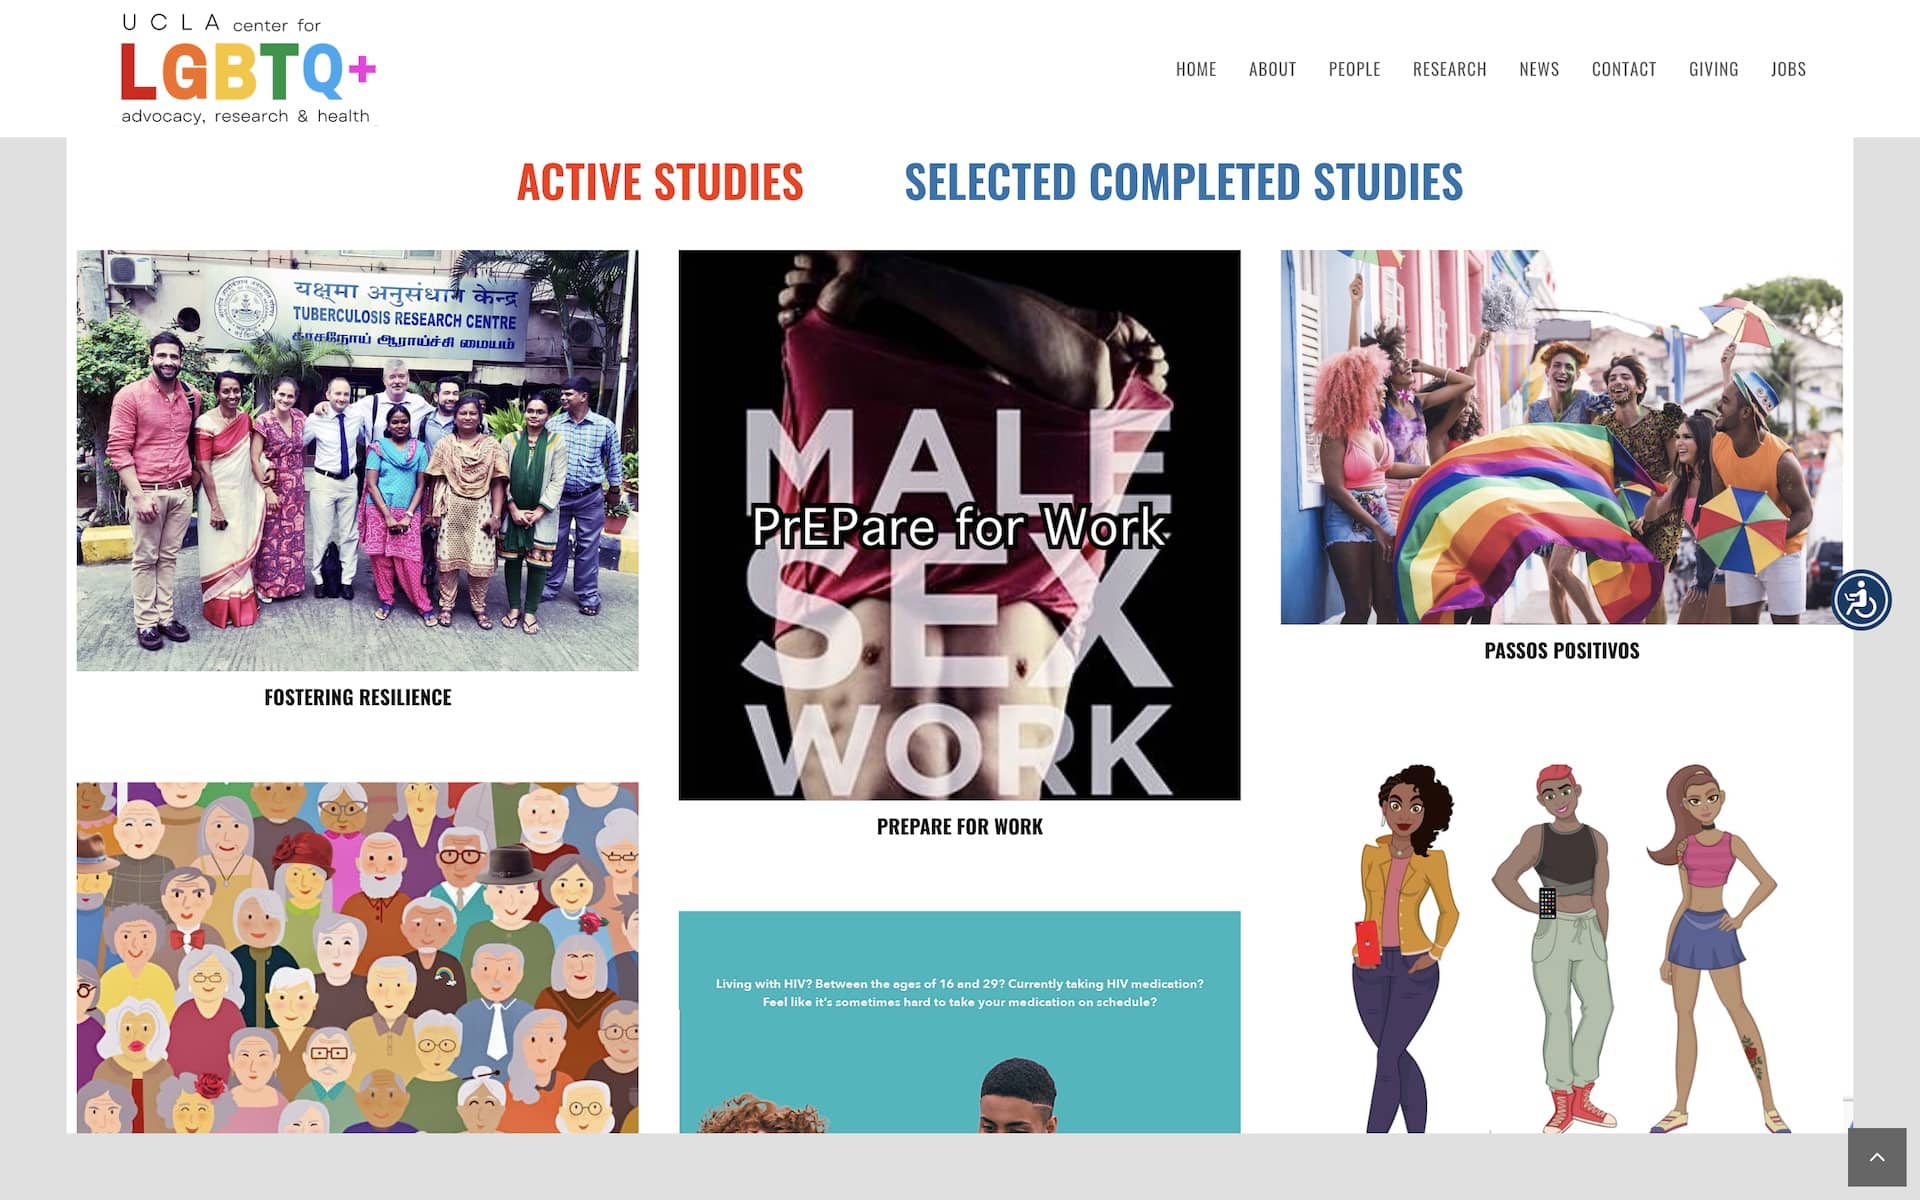 UCLA LGBTQ+ Website Page Screenshot